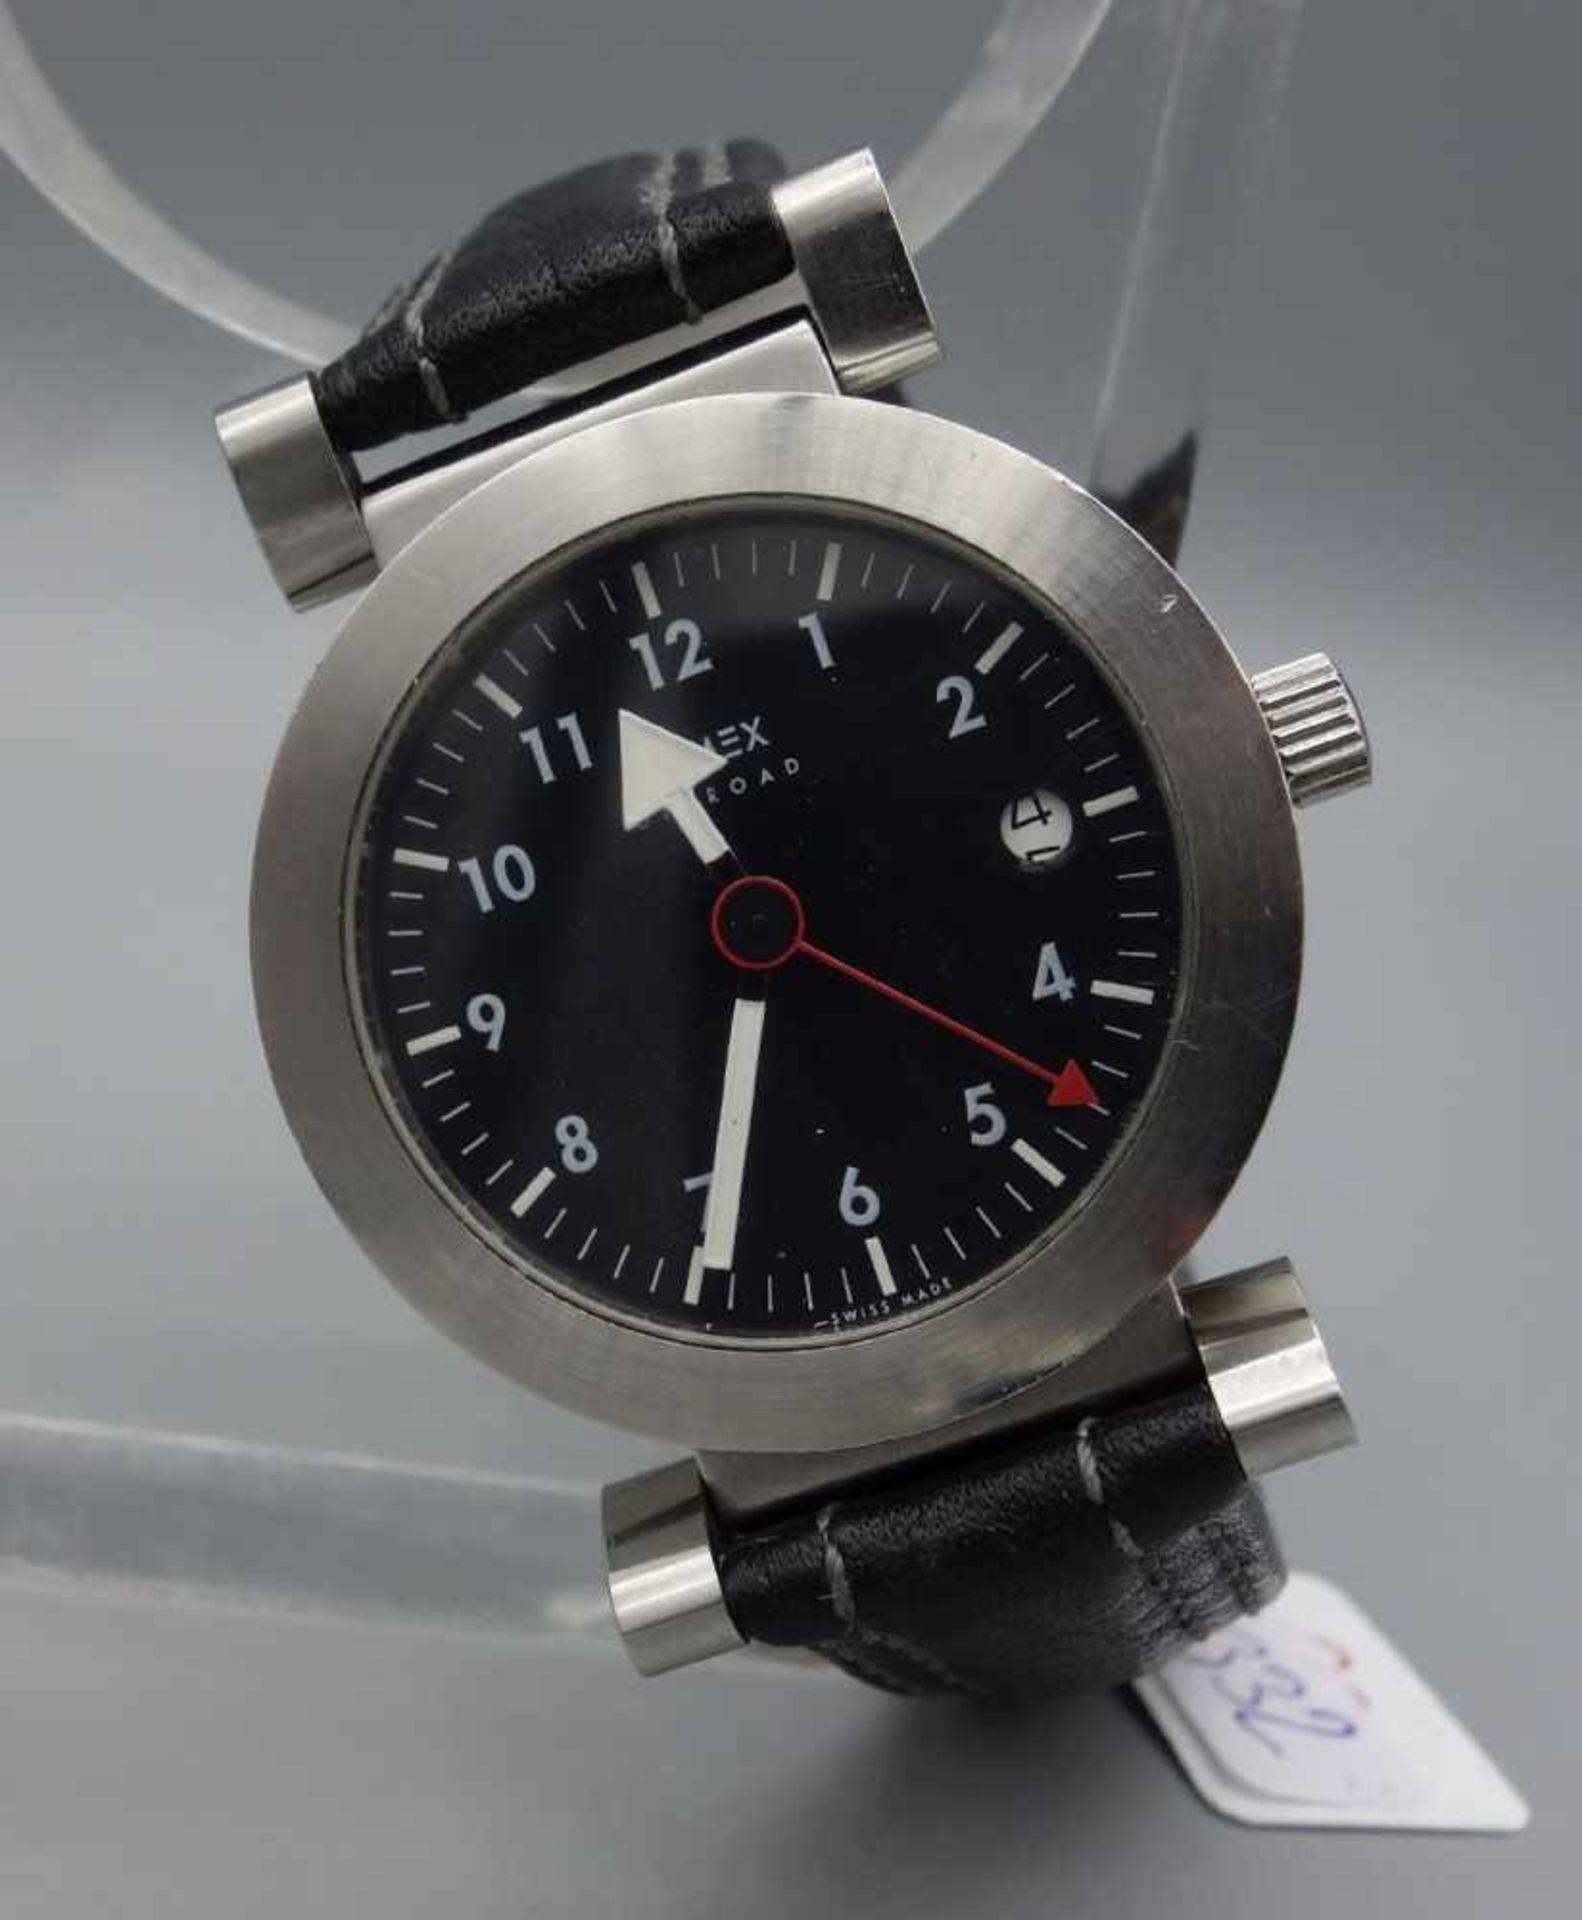 ARMBANDUHR - XEMEX OFFROAD / wristwatch, Quarz, Schweiz. Rundes Edelstahlgehäuse an schwarzem